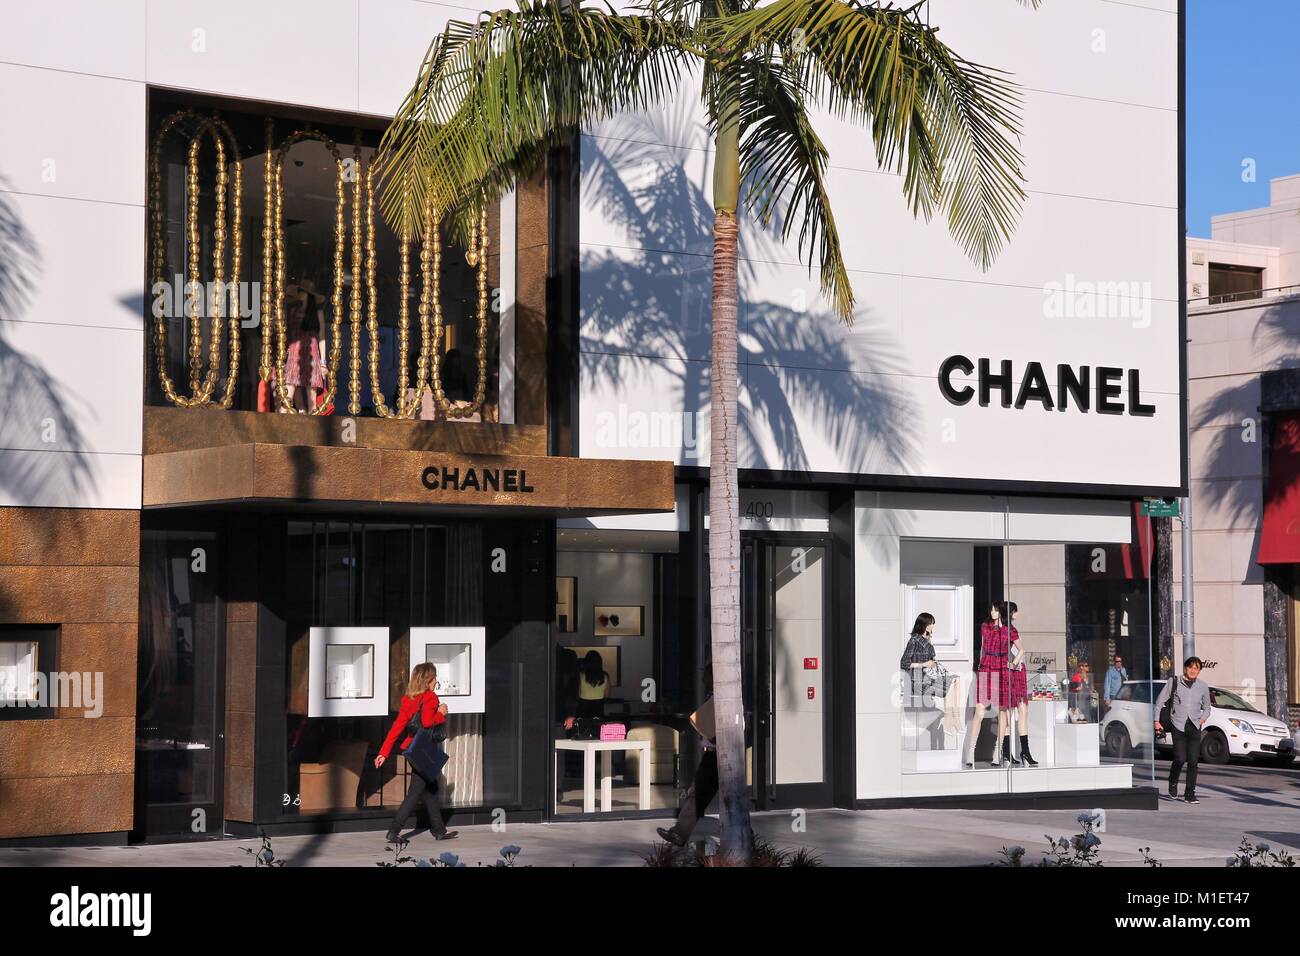 LOS ANGELES, USA - April 5, 2014: Shopper besuchen Chanel store in Beverly  Hills, Los Angeles. Die berühmte Marke besteht seit 1909 und hatte 6,3  Milliarden EU Stockfotografie - Alamy